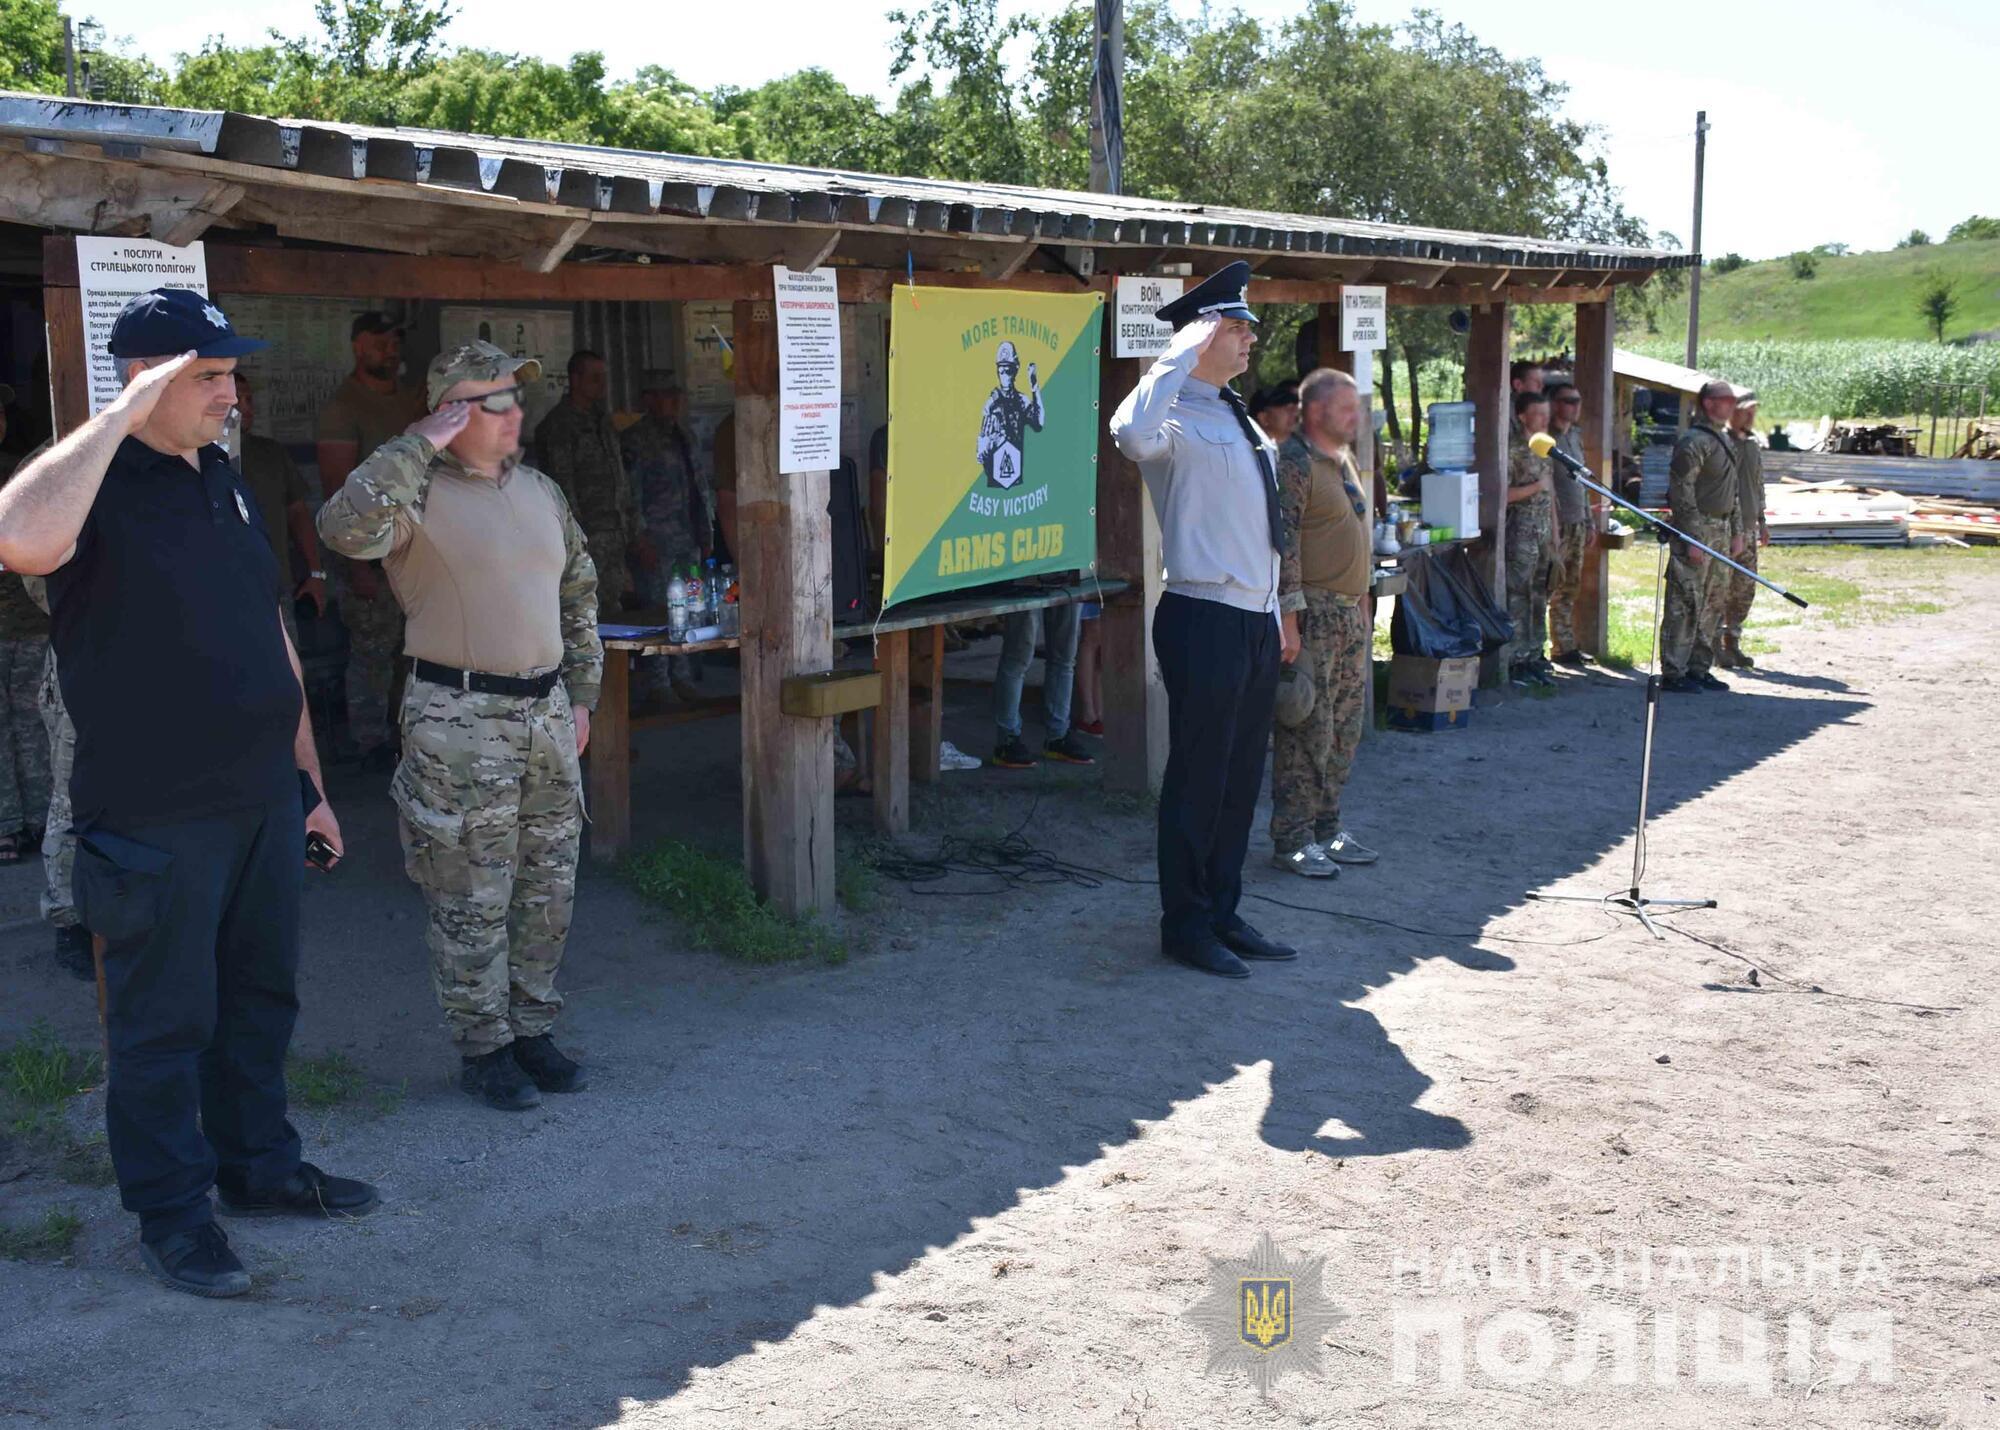 Поліцейські Кіровоградщини увійшли до трійки кращих команд на змаганнях із прикладної стрільби